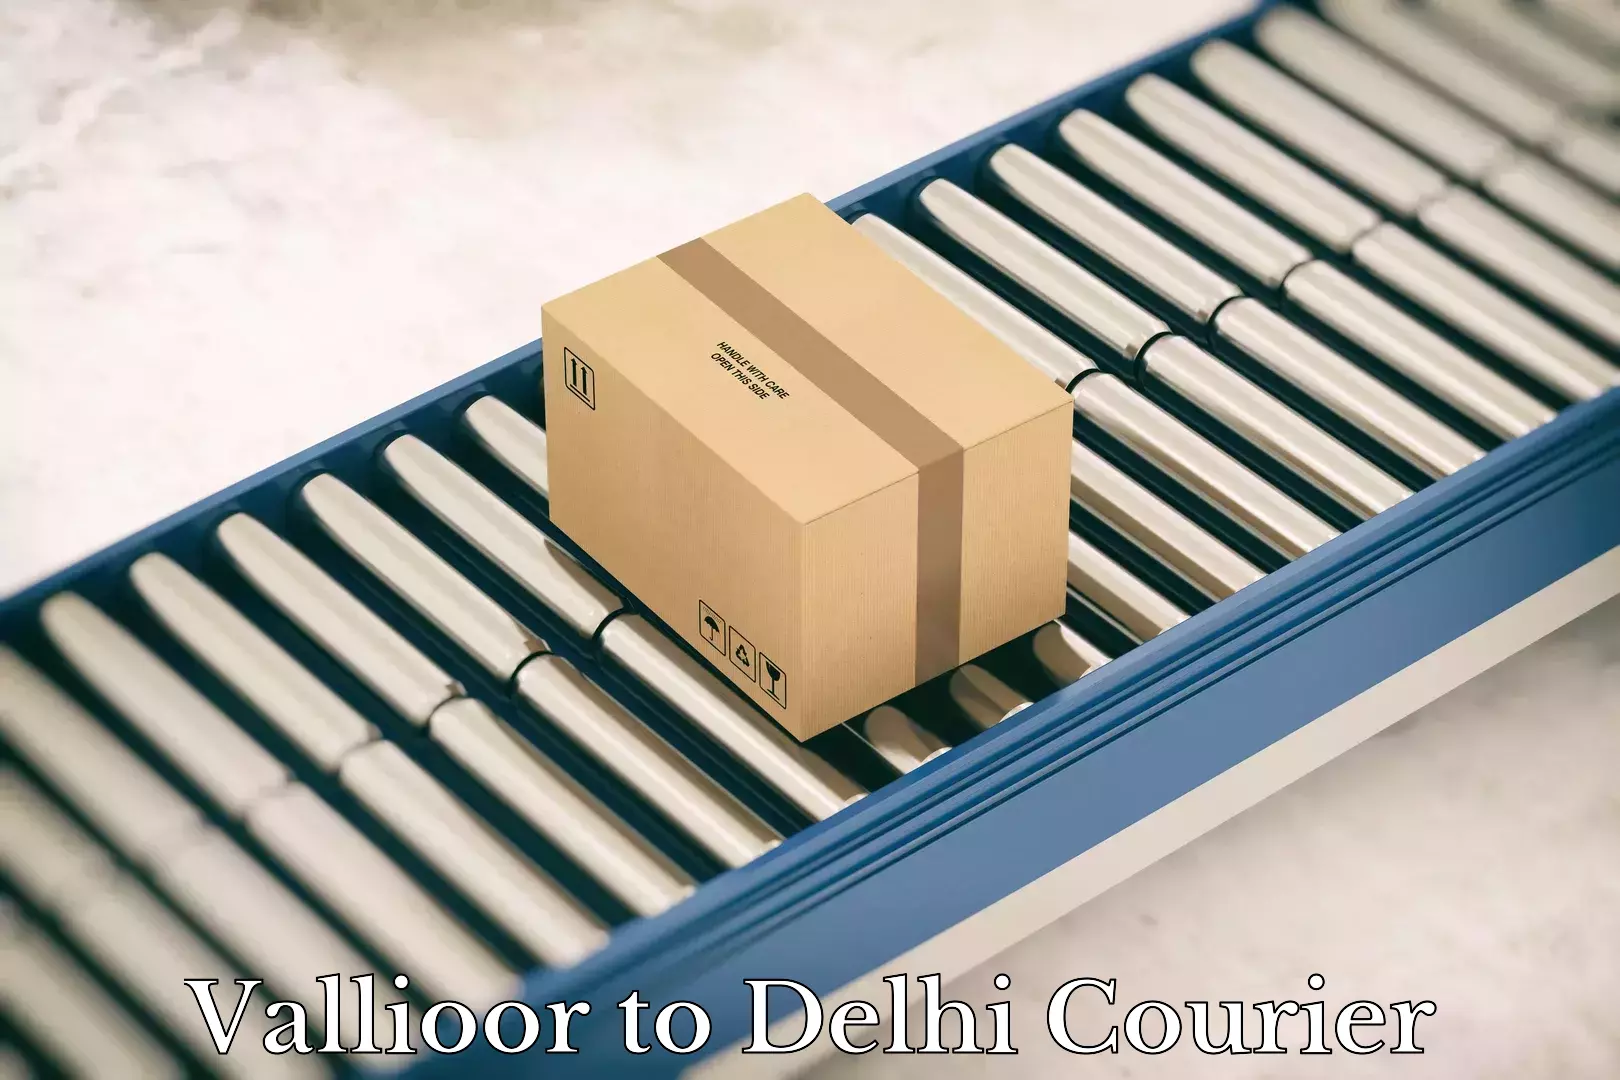 Fast shipping solutions Vallioor to Delhi